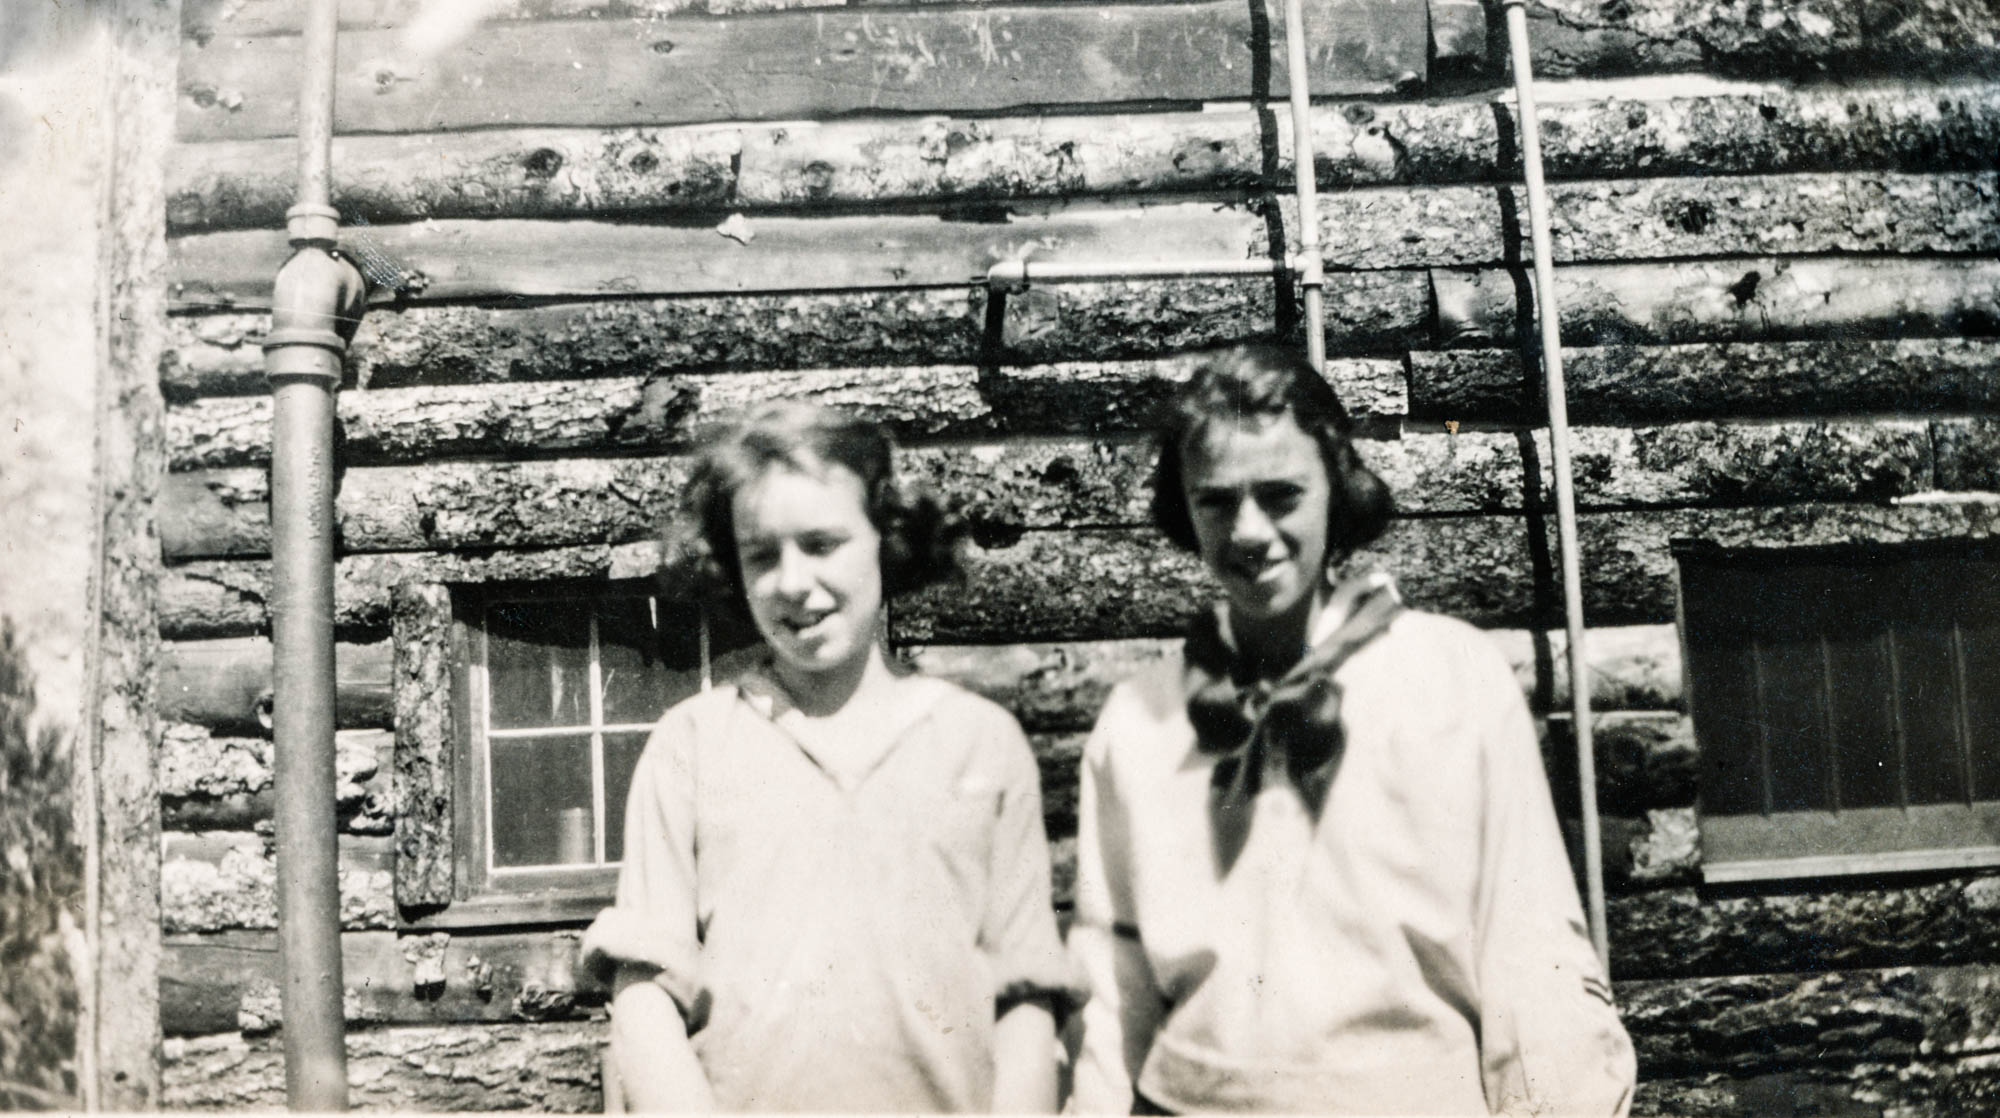 Idlewild Lodge - idlewildlodge.github.io - 1921 - Elizabeth Dauth and Elizabeth Jones at Idlewild Lodge